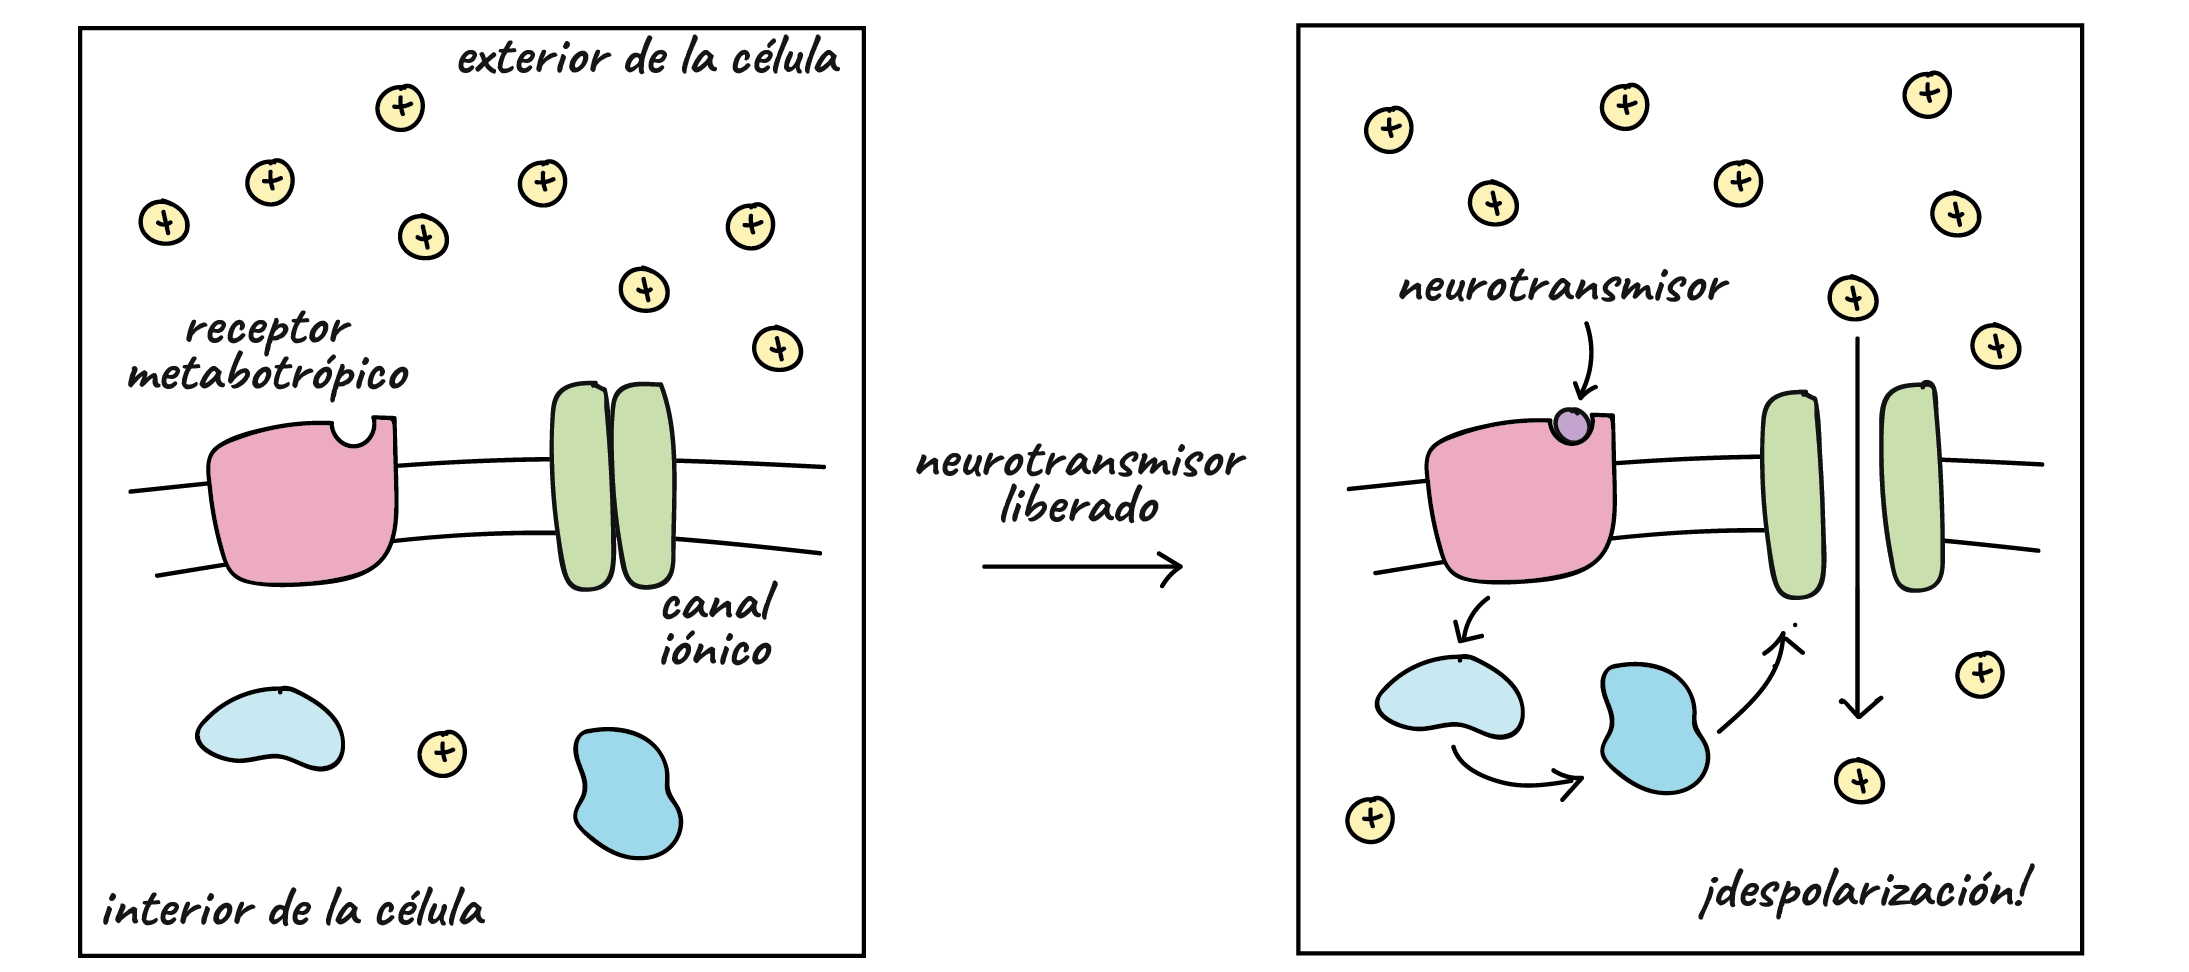 Diagrama de una forma en que puede actuar un receptor metabotrópico. El ligando se une al receptor, que desencadena una cascada de señalización dentro de la célula. La cascada de señalización provoca la apertura del canal iónico y permite que los cationes fluyan por su gradiente de concentración hacia el interior de la célula, lo que resulta en una despolarización.